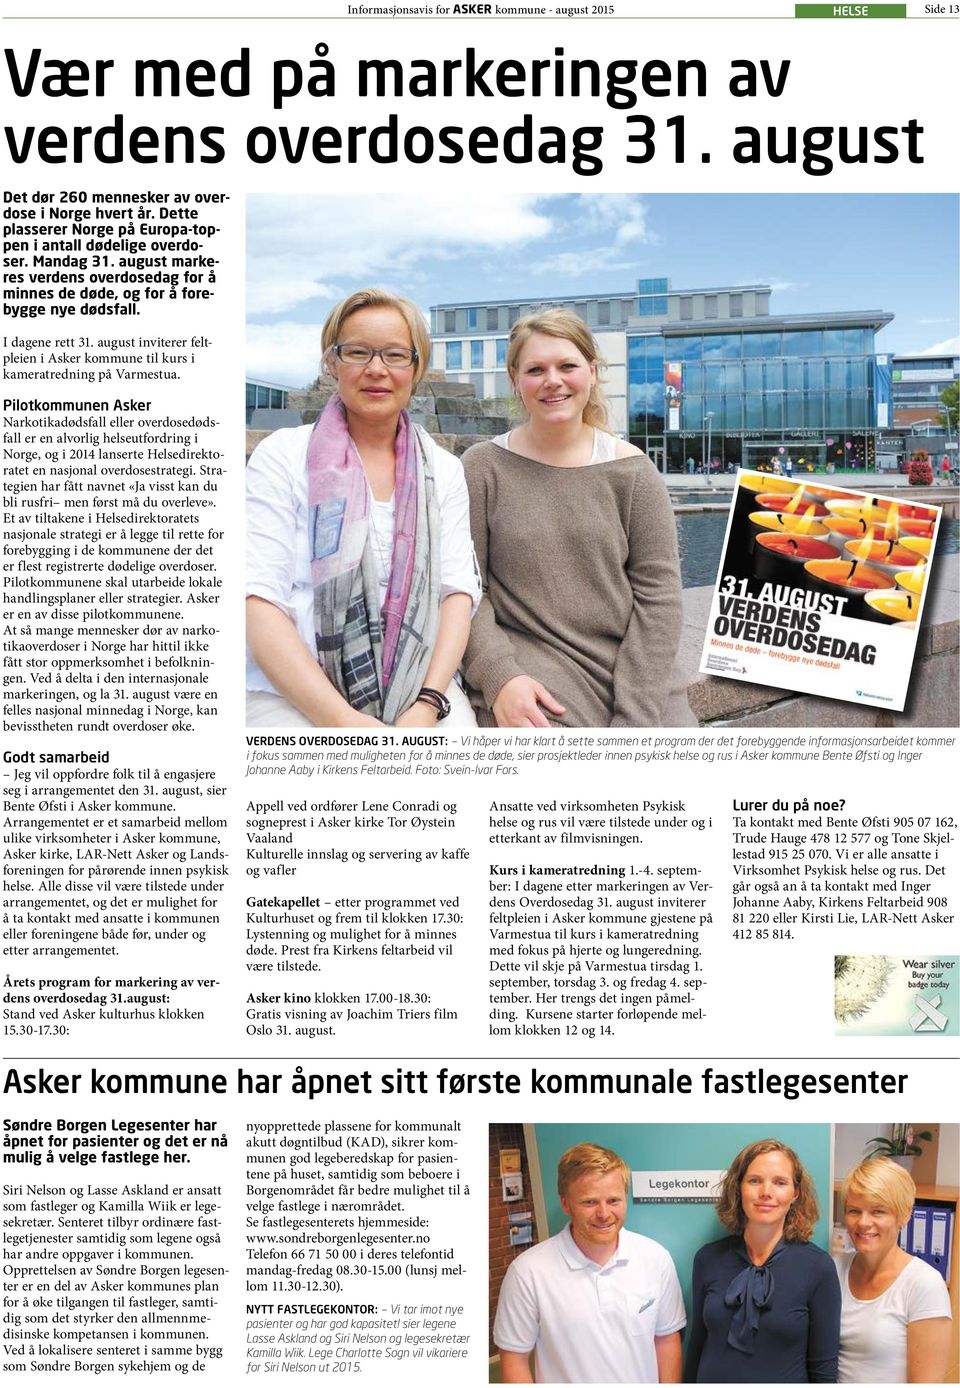 august inviterer feltpleien i Asker kommune til kurs i kameratredning på Varmestua.